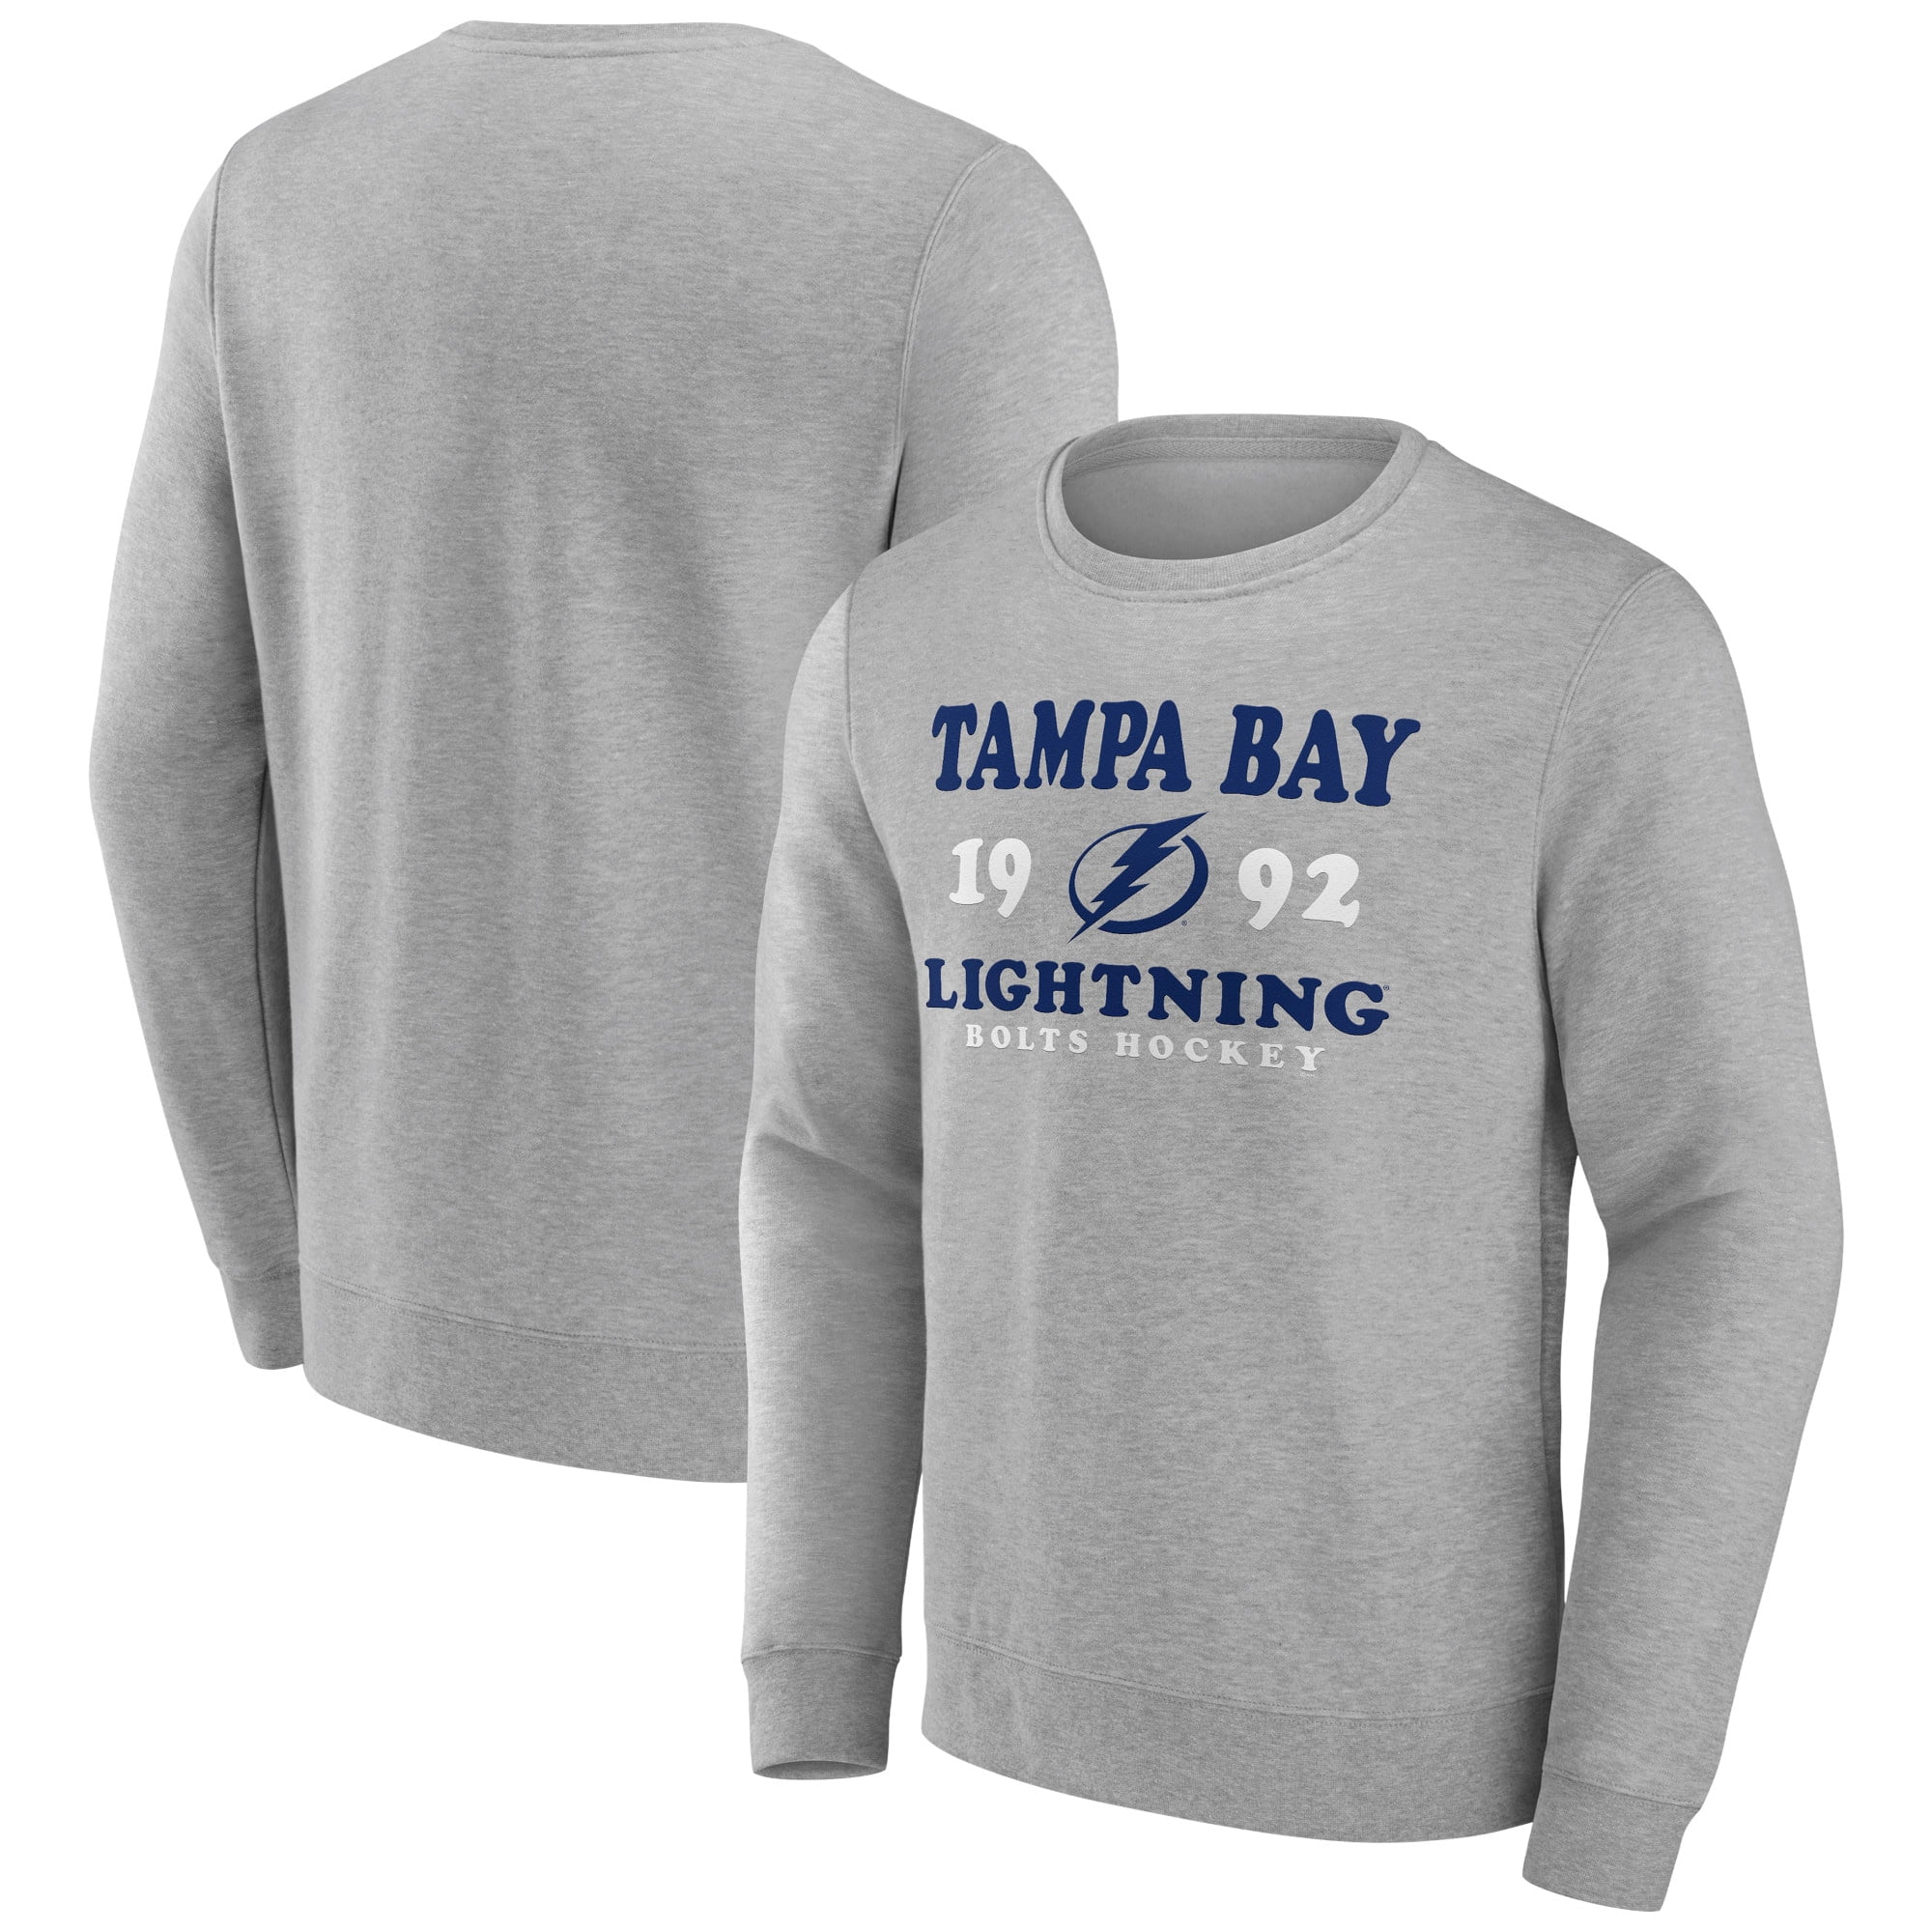 tampa bay lightning playoff shirt